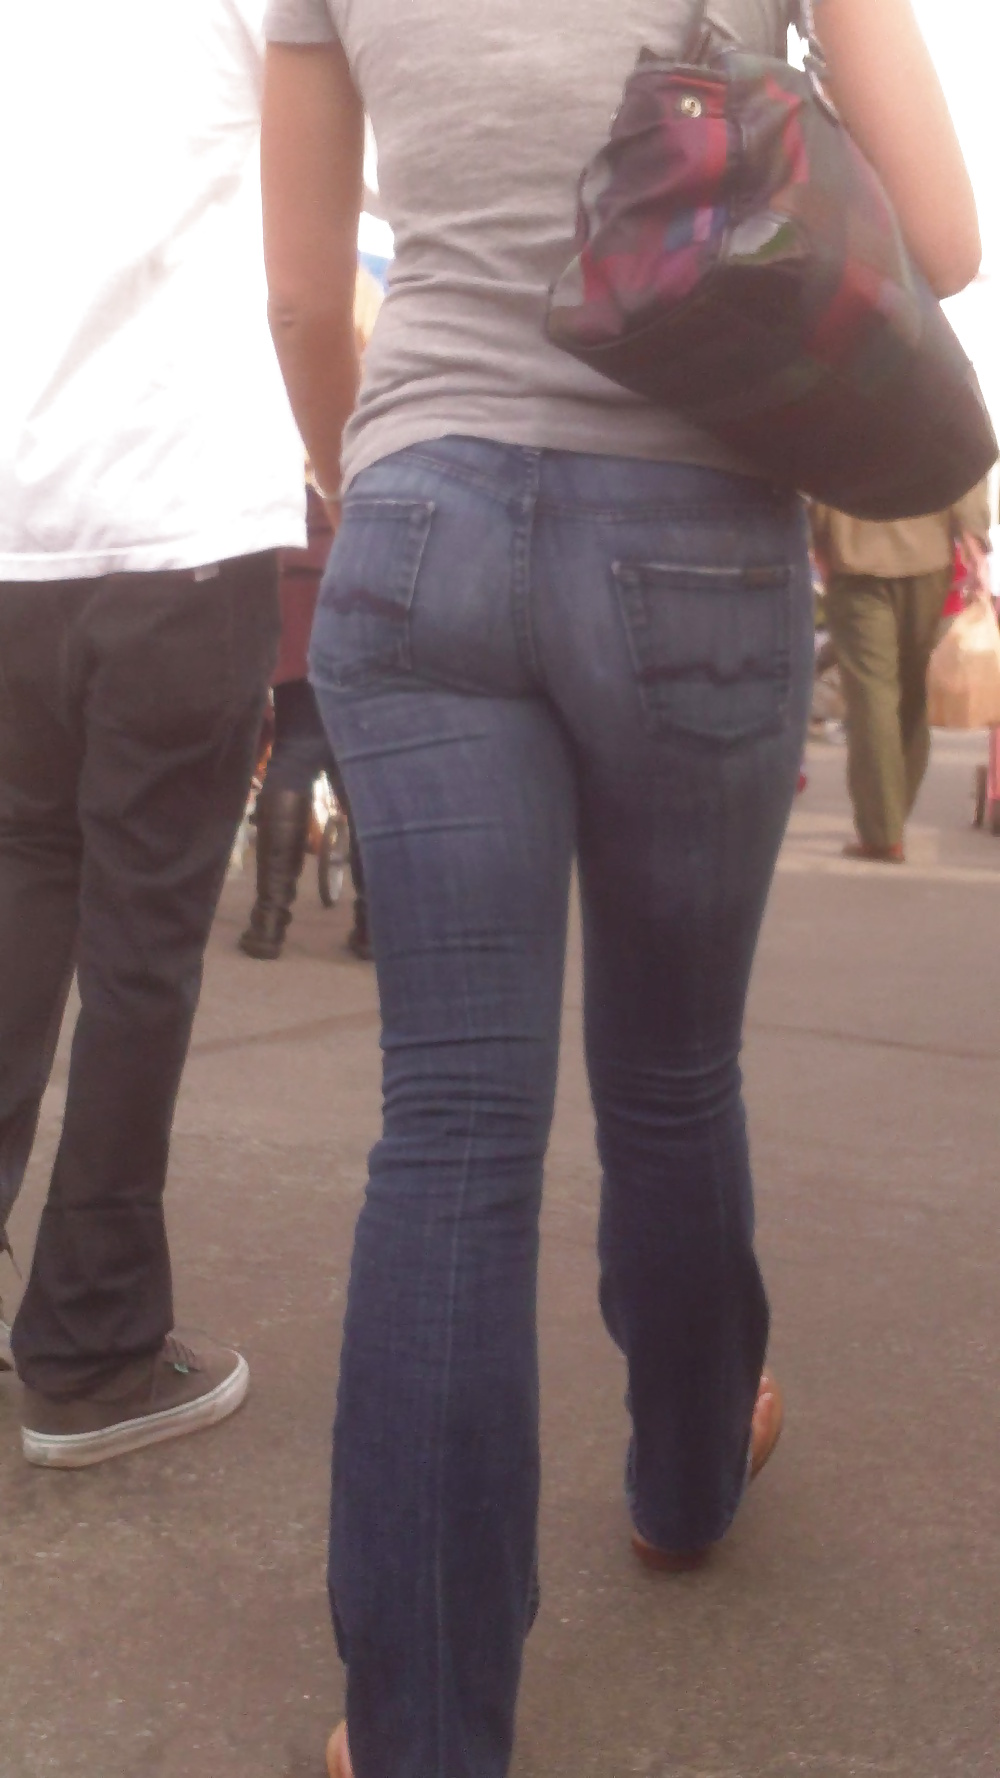 Popular teen girls ass & butt in jeans Part 7 #39947469